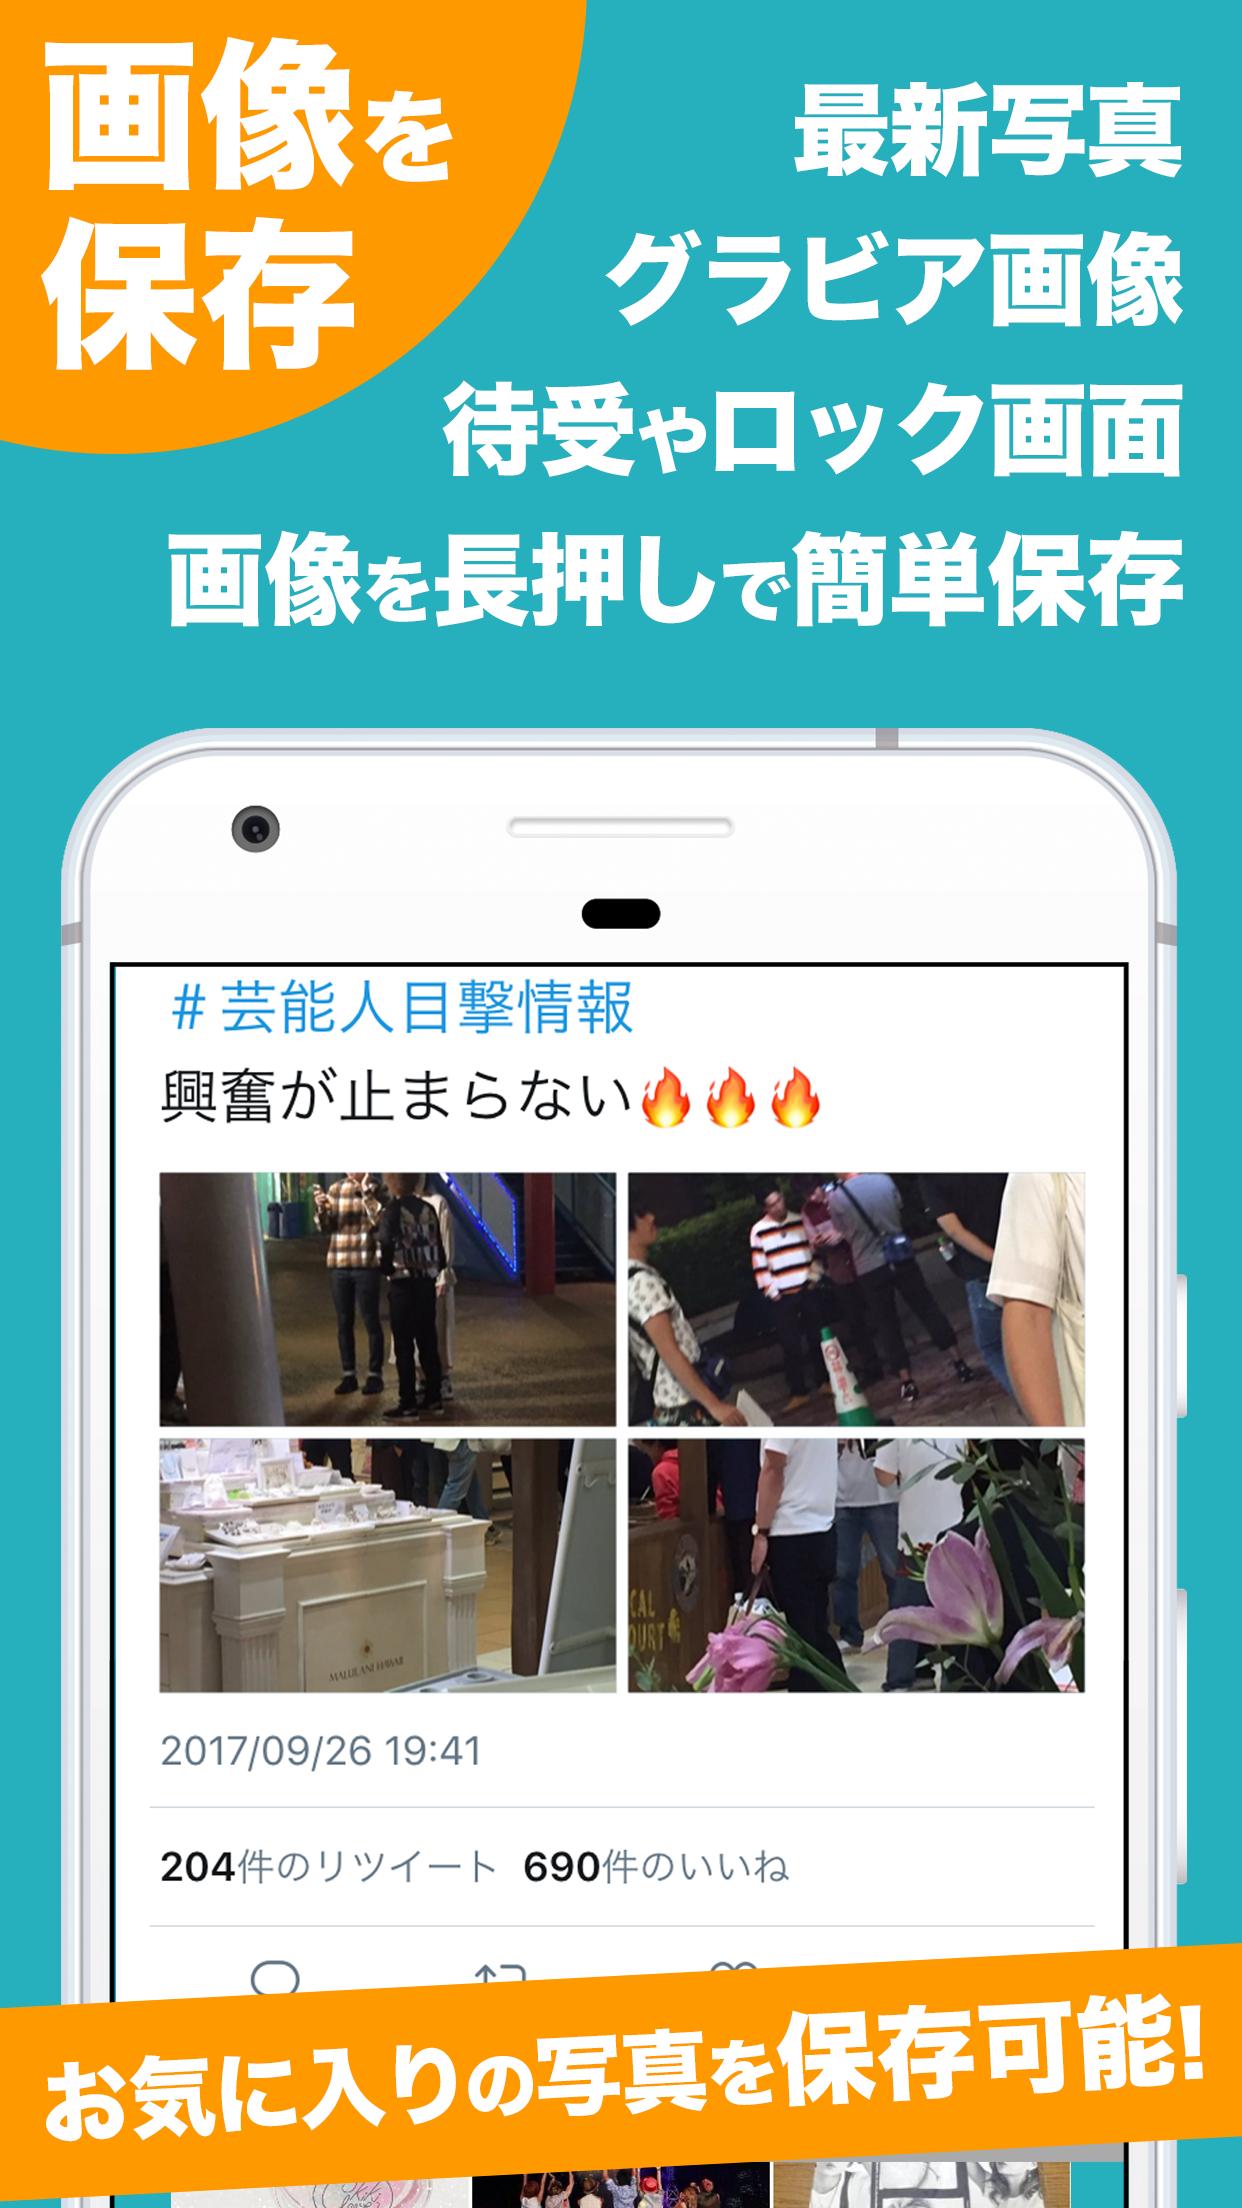 ビッベンまとめタブ For Bigbang For Android Apk Download